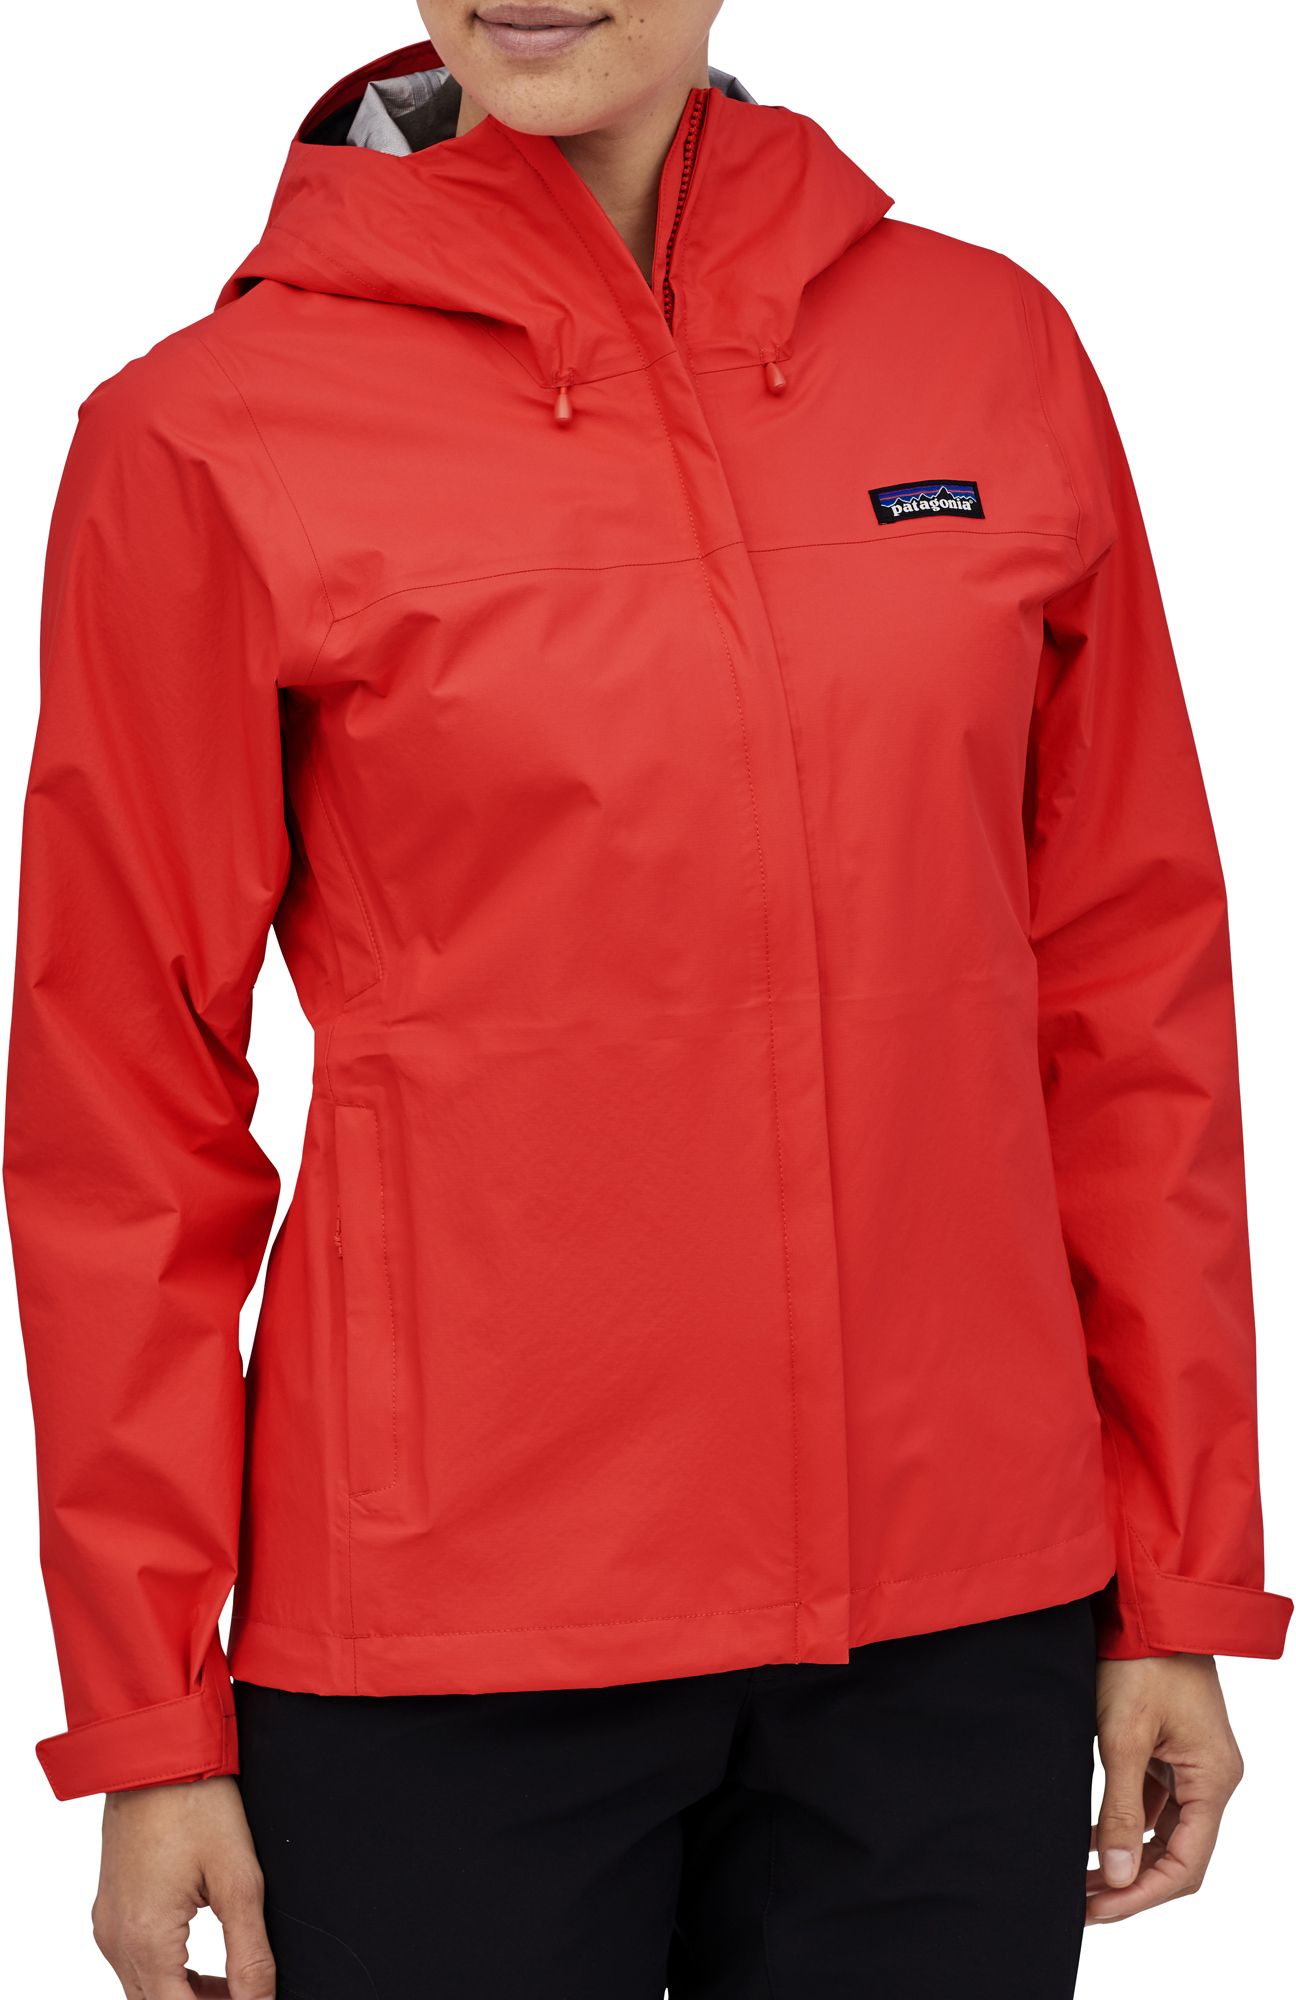 Patagonia Women's Torrentshell 3L Rain Jacket, Large, Birch White